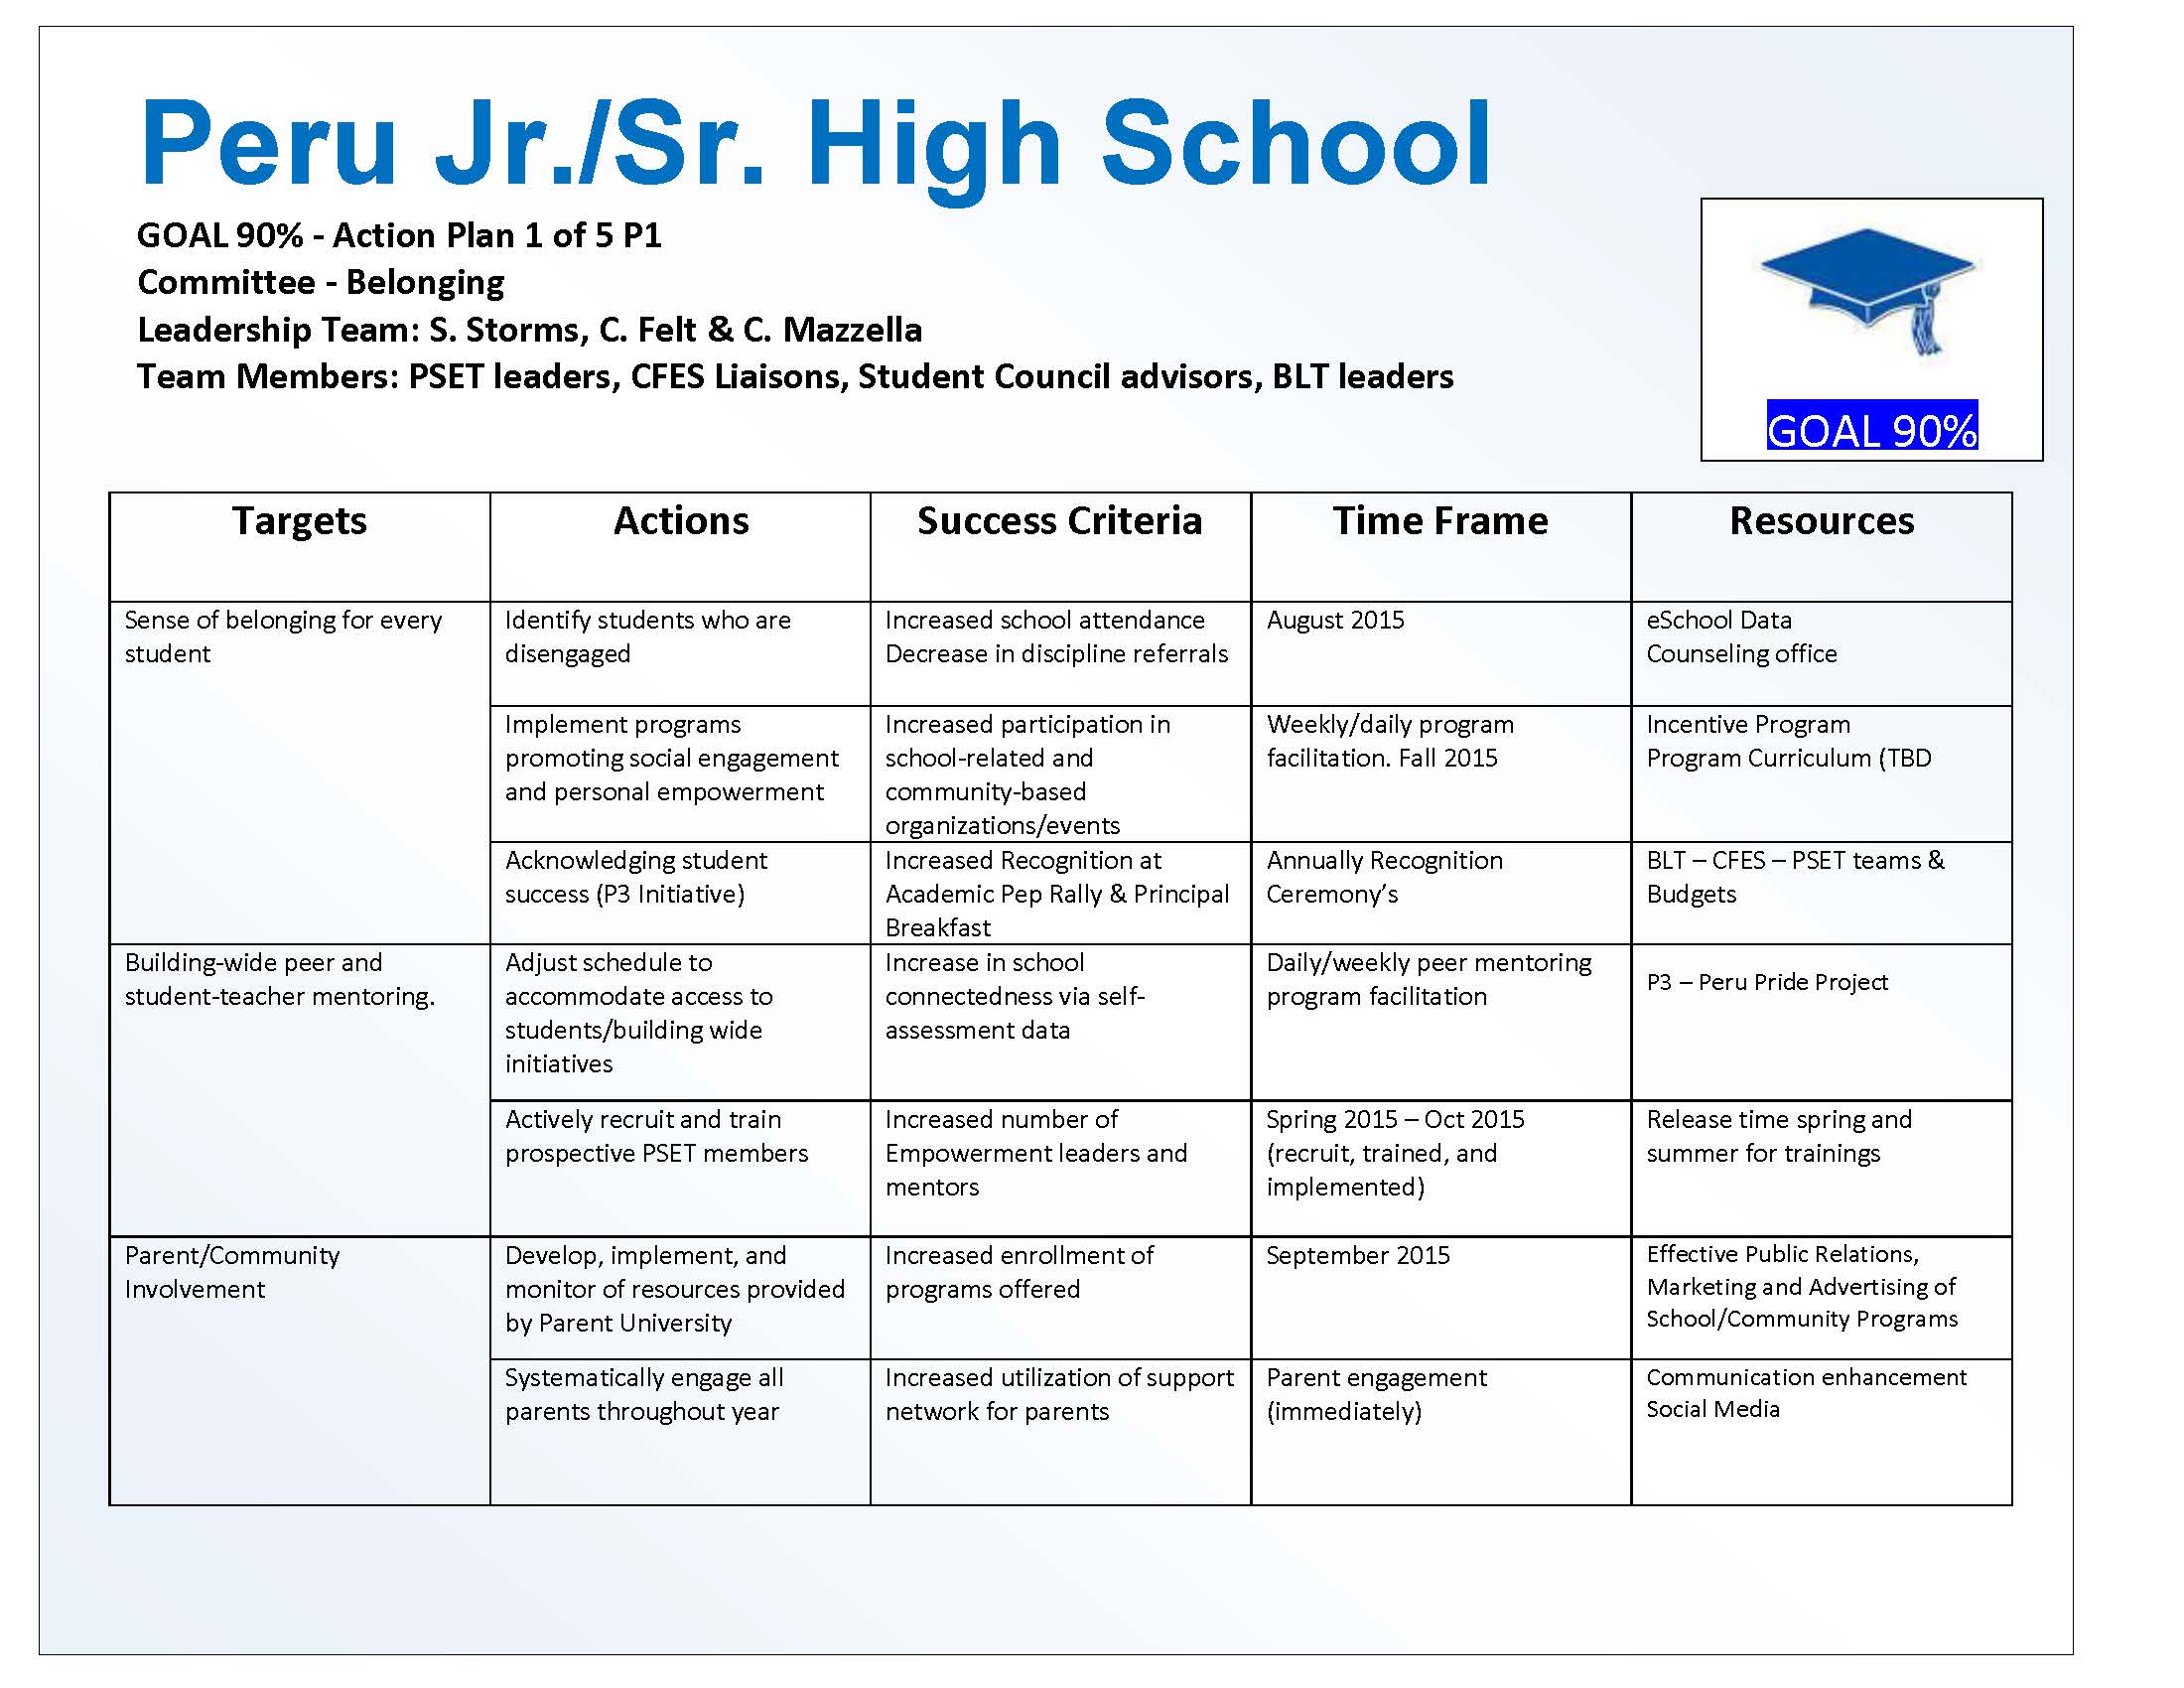 Peru Jr/Sr High School Building Goals